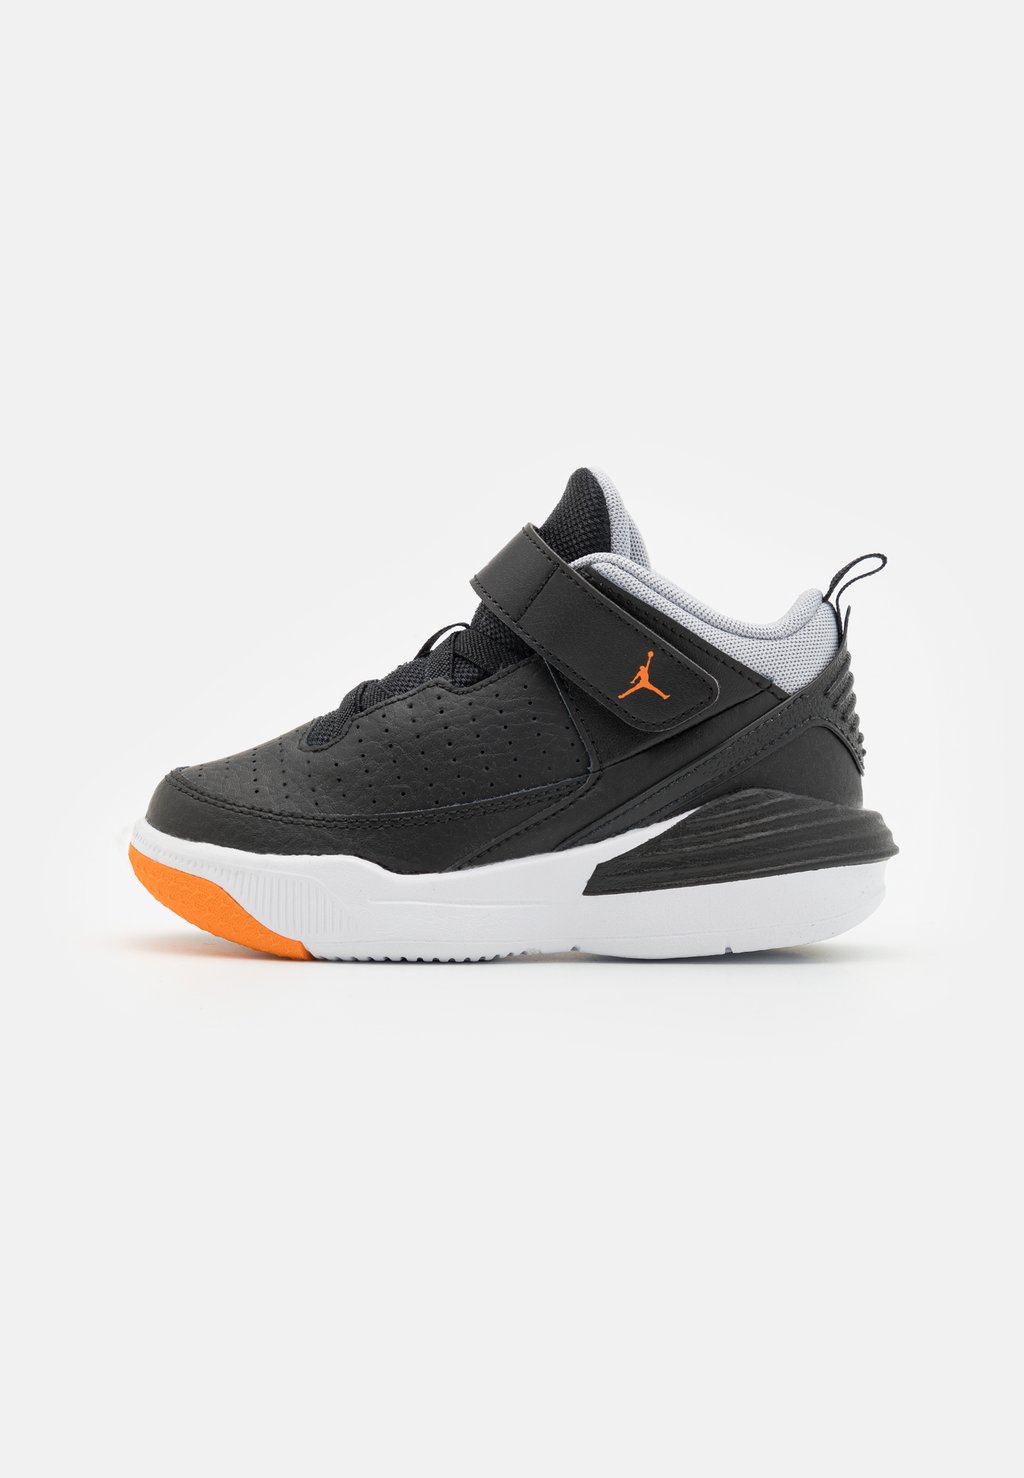 Баскетбольные кроссовки Jordan Max Aura 5 Unsex Jordan, цвет black/magma orange/wolf grey/white